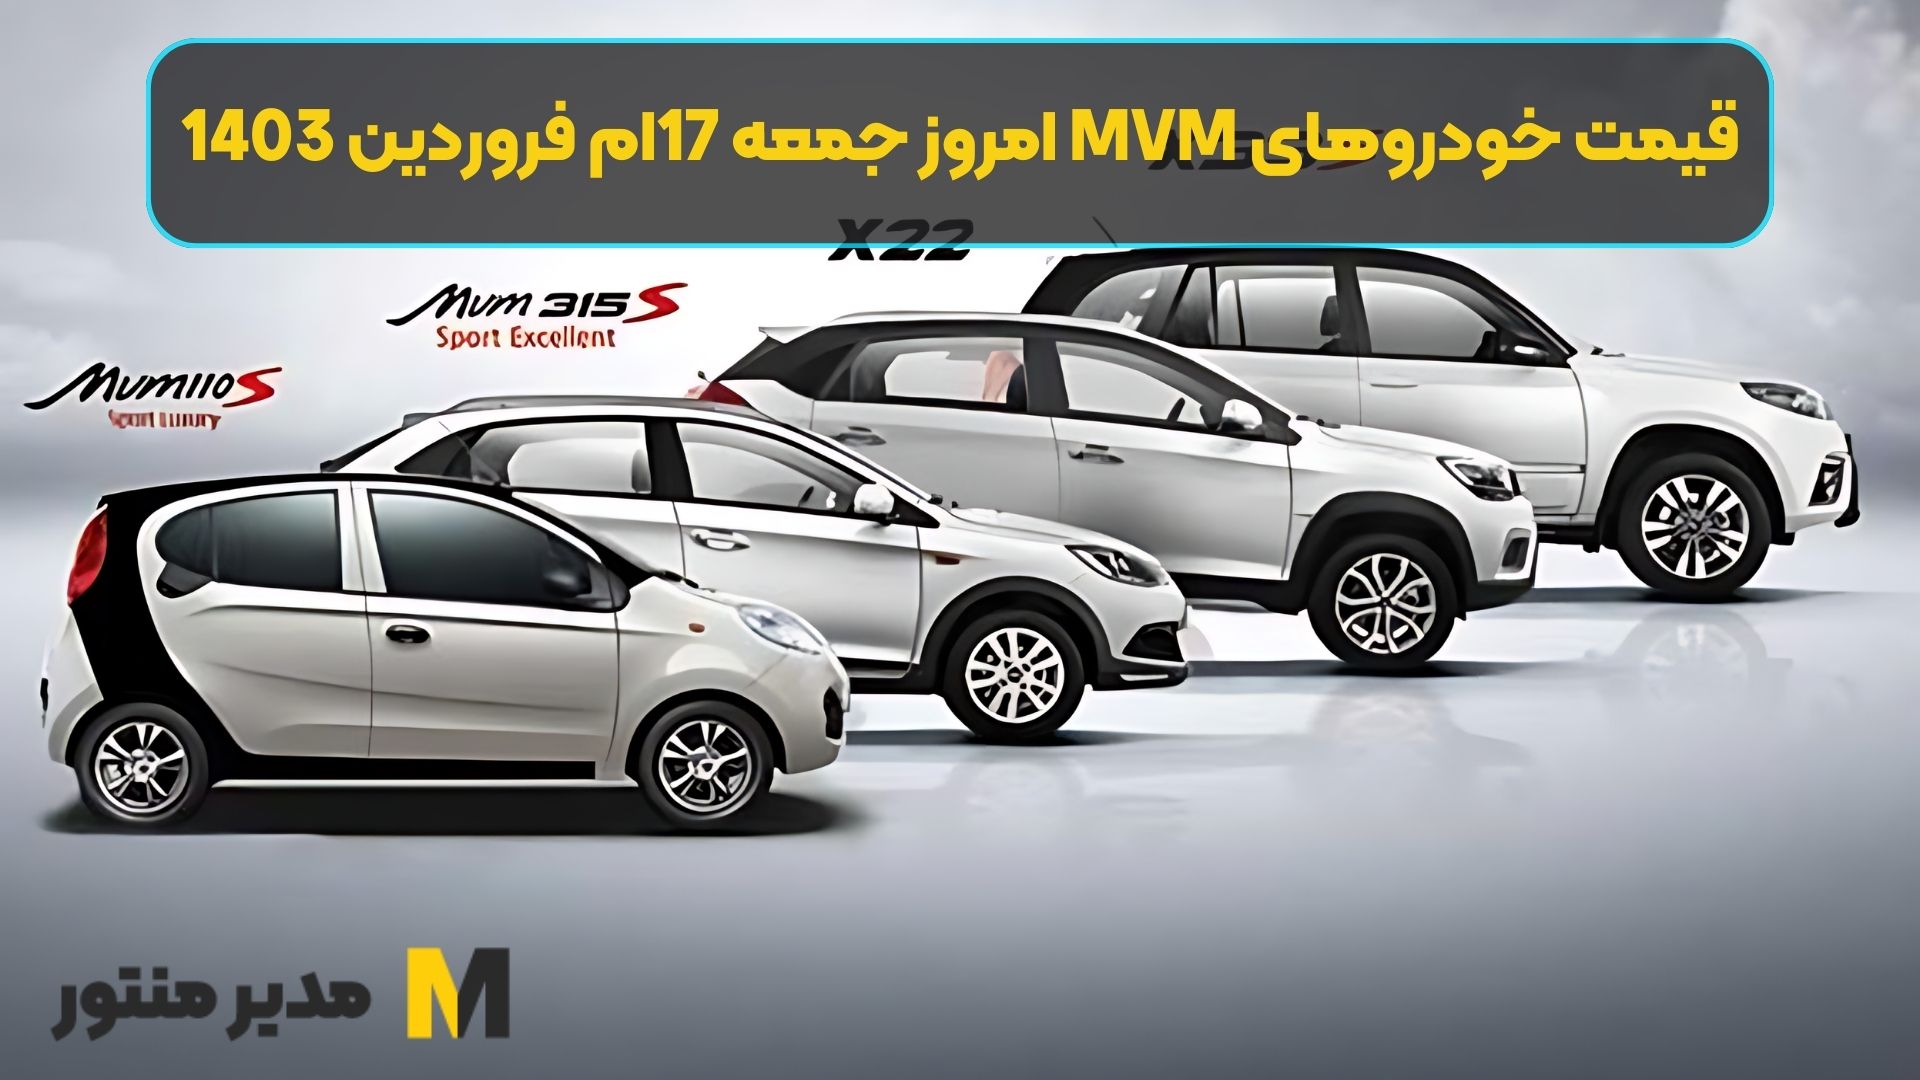 قیمت خودروهای MVM امروز جمعه 17ام فروردین 1403